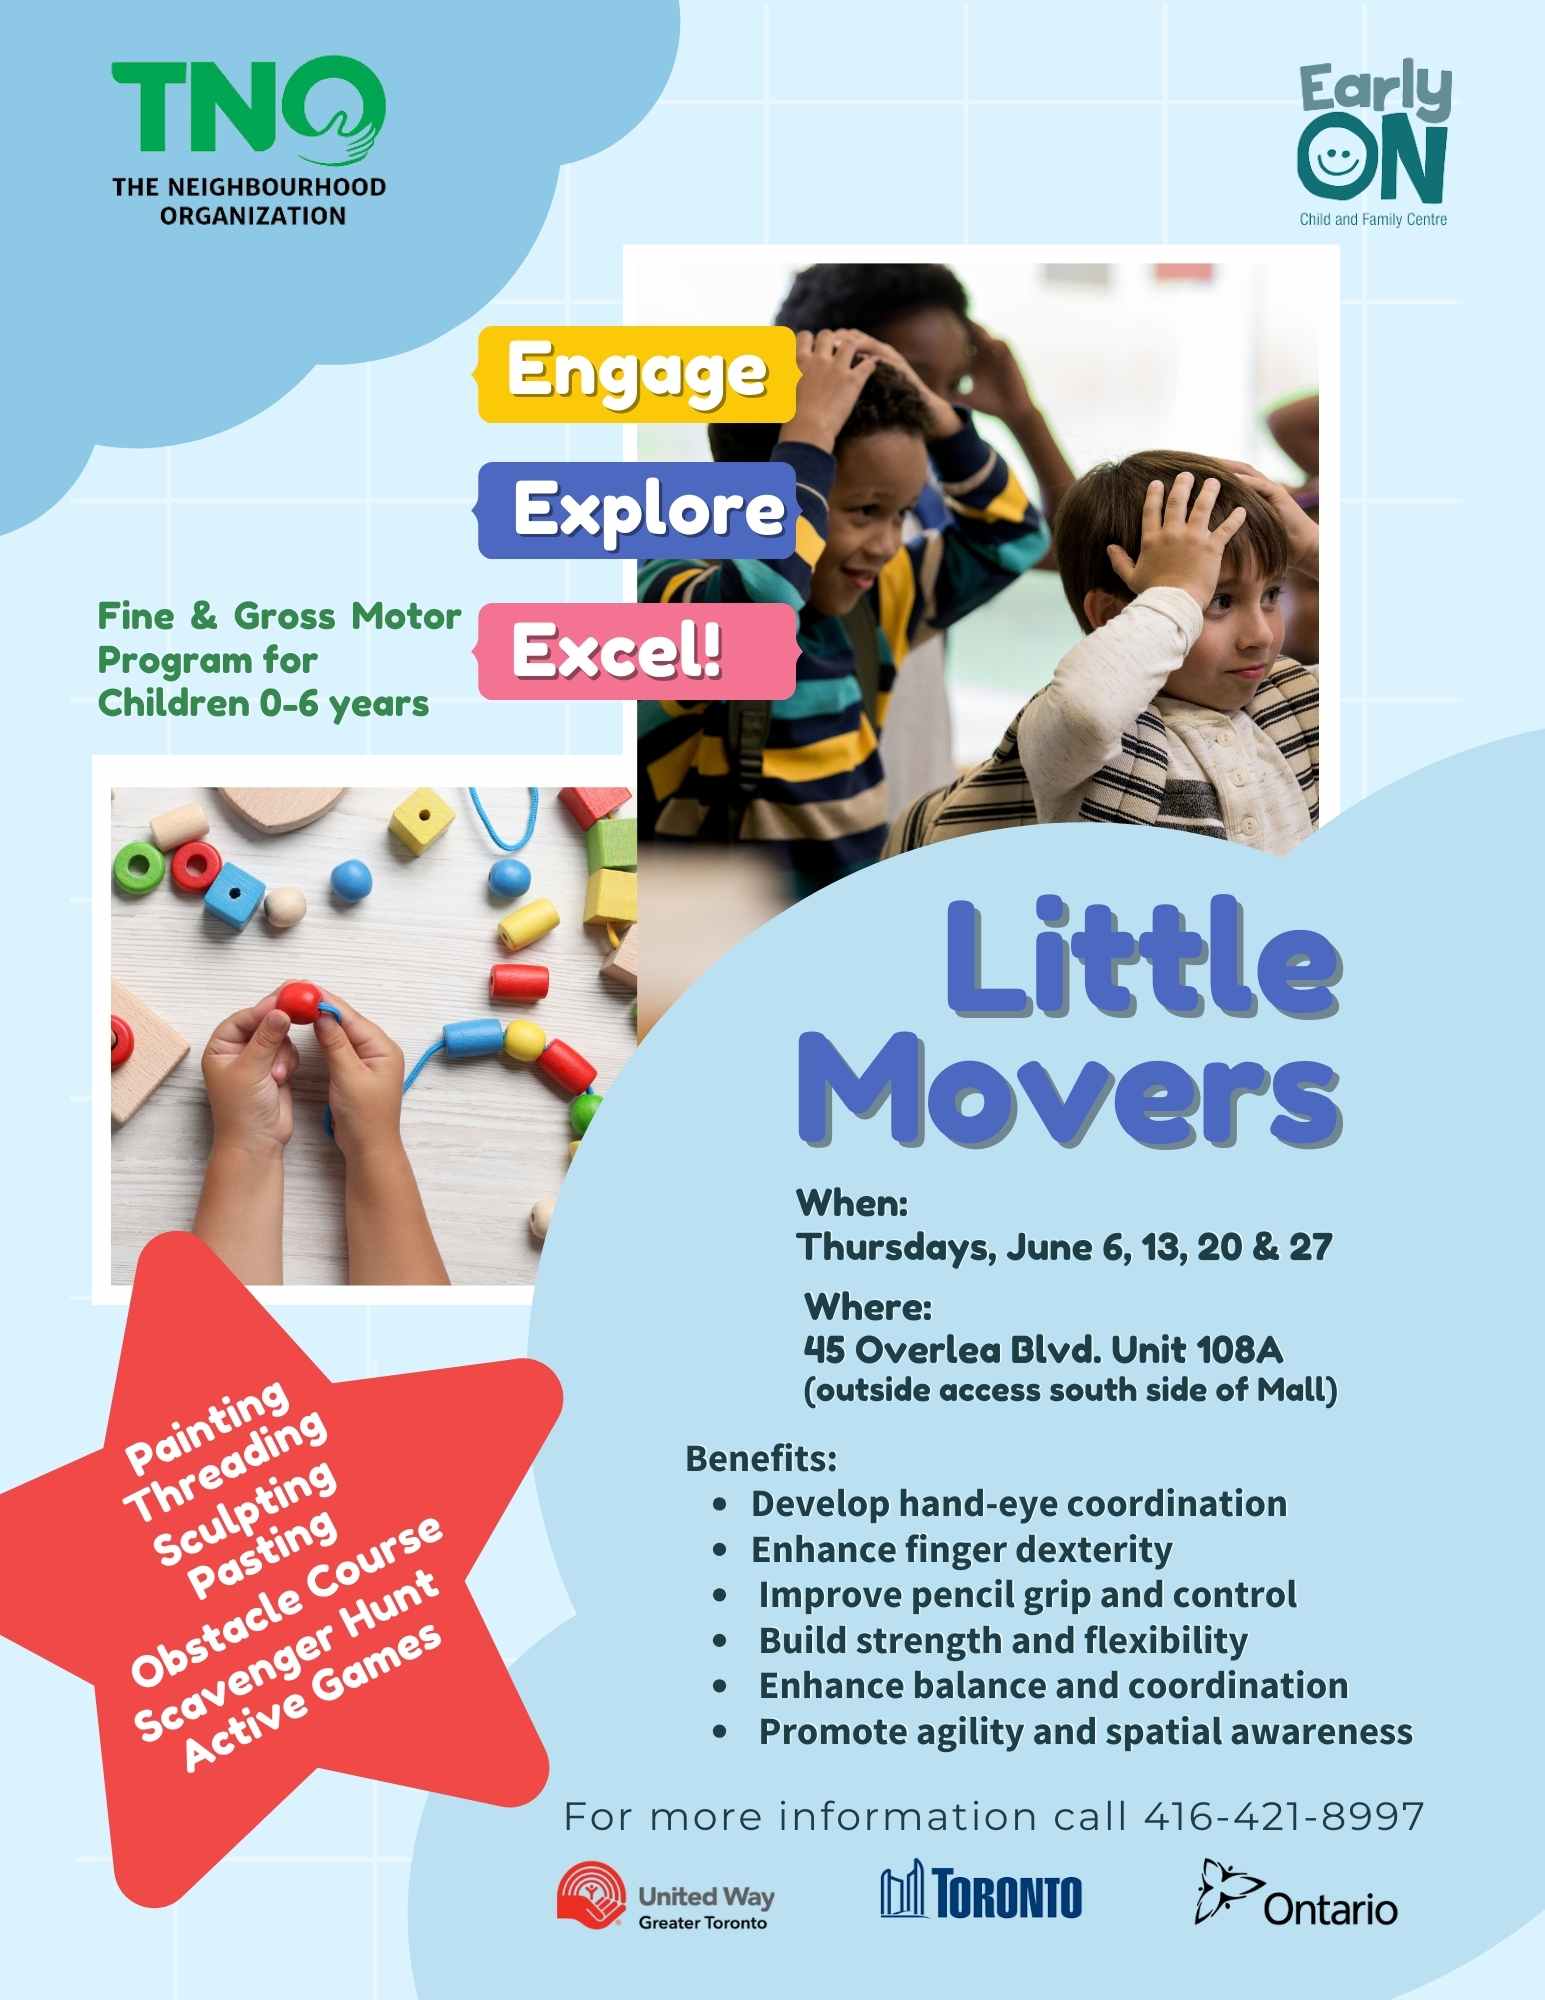 Little Movers - New Fine & Gross Motor Program